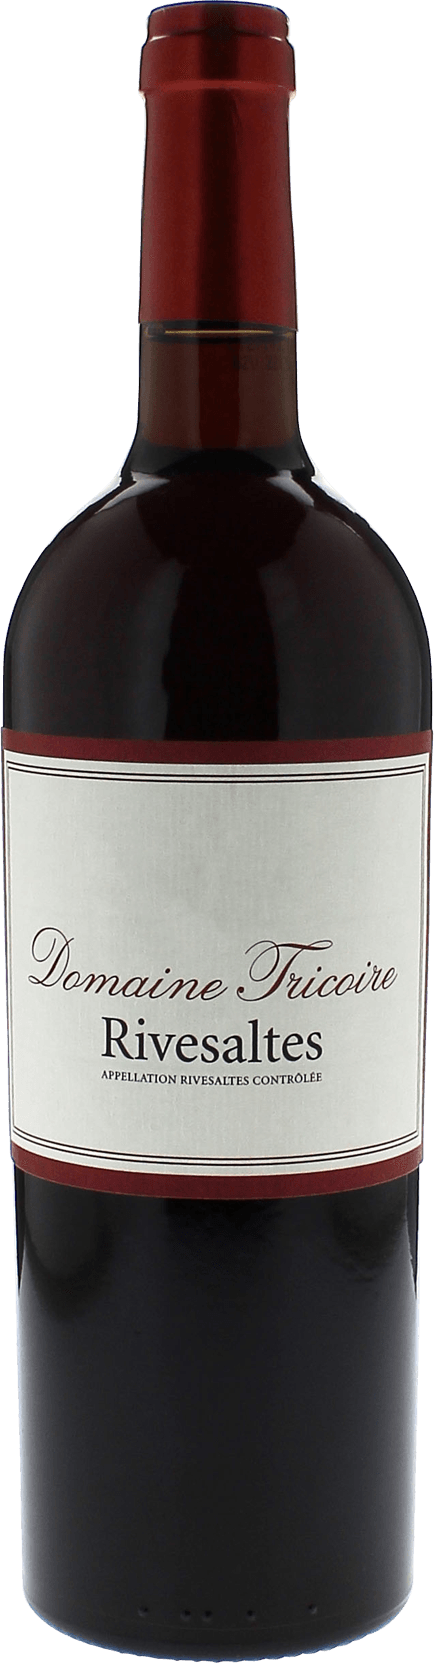 Rivesaltes domaine tricoire 1951 Vin doux naturel Rivesaltes, Vin doux naturel